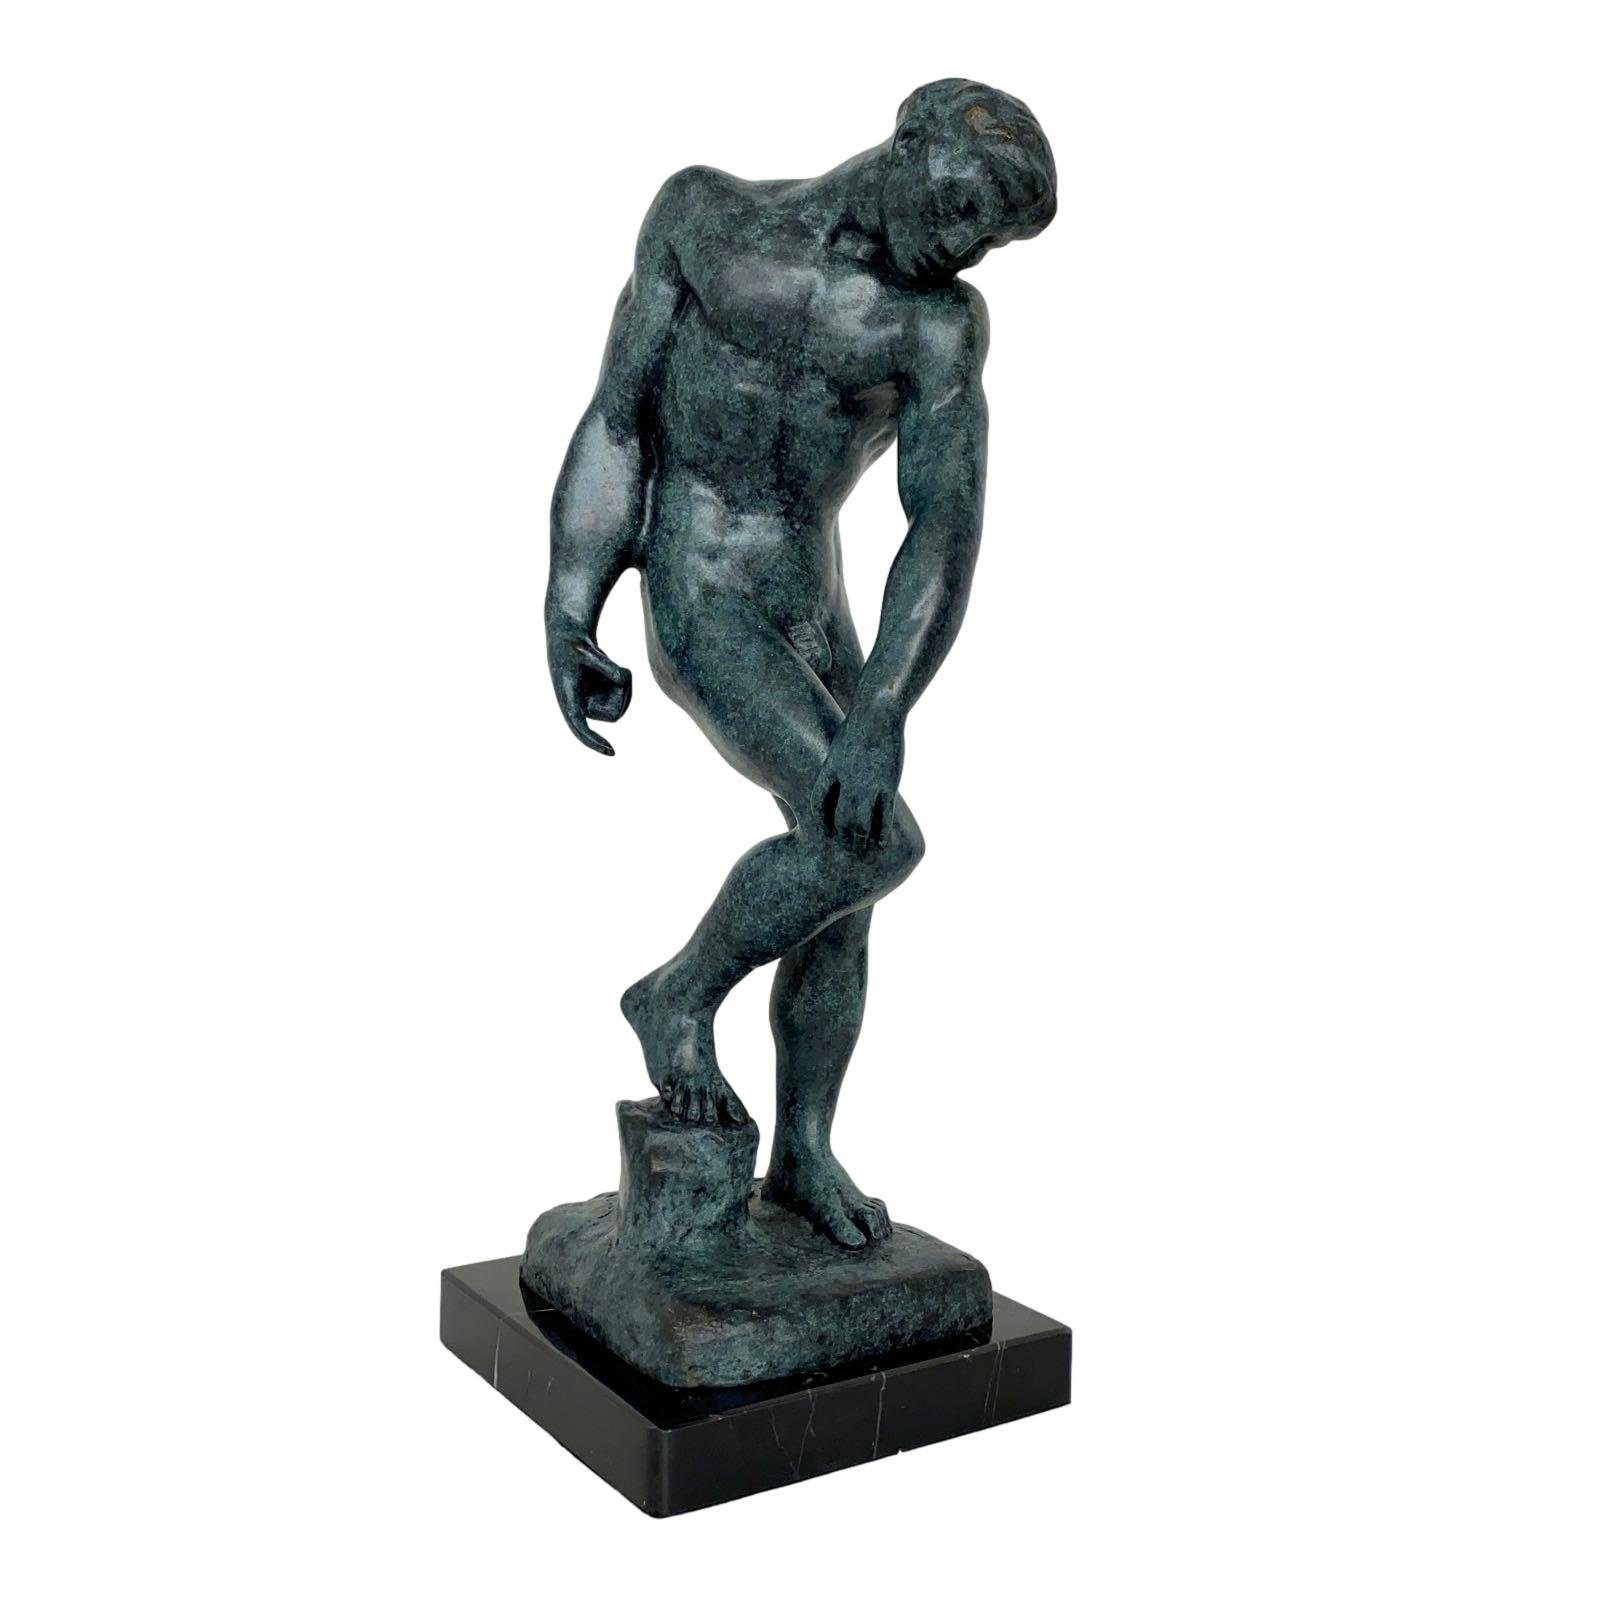 Aubaho Skulptur Bronzeskulptur nach Rodin Adam Figur Statue 30cm Antik-Stil Kopie Repl